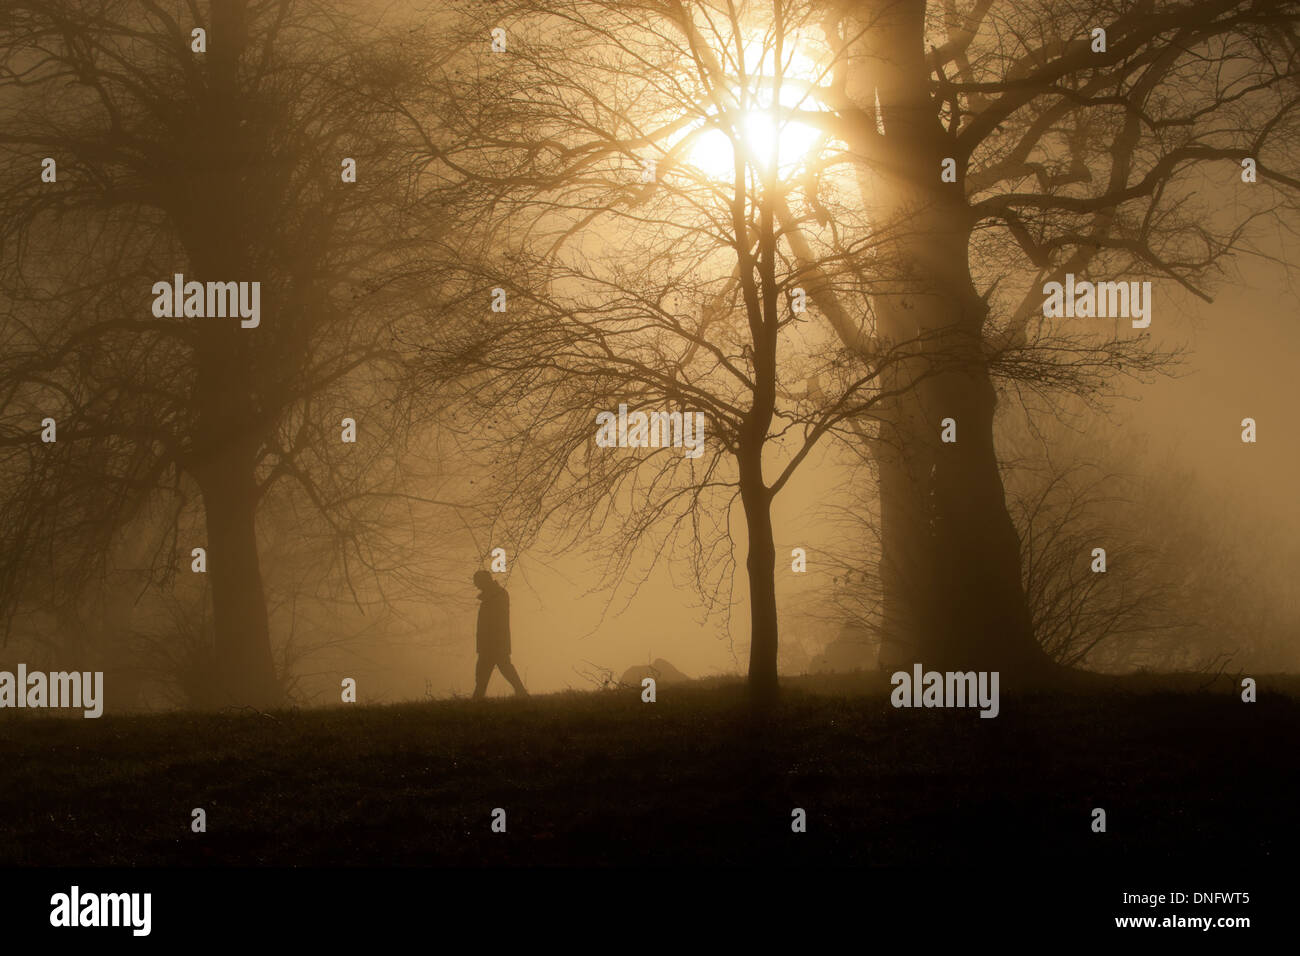 Sunlight through mist and trees, Malvern Worcs UK Stock Photo